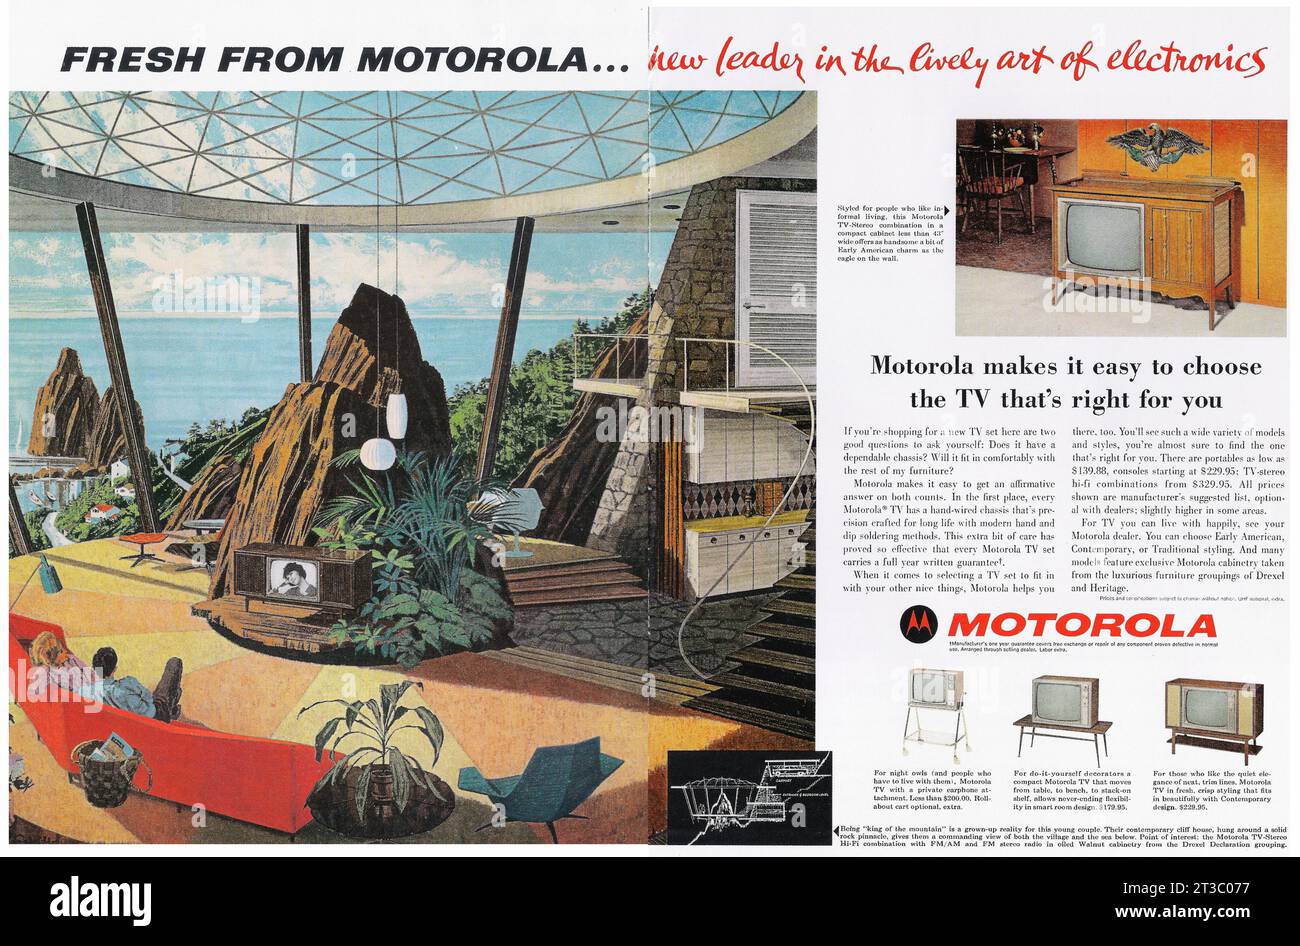 1963 set TV Motorola, annuncio TV-stereo 'Appena nato da Motorola... nuovo leader nella vivace arte dell'elettronica" Foto Stock